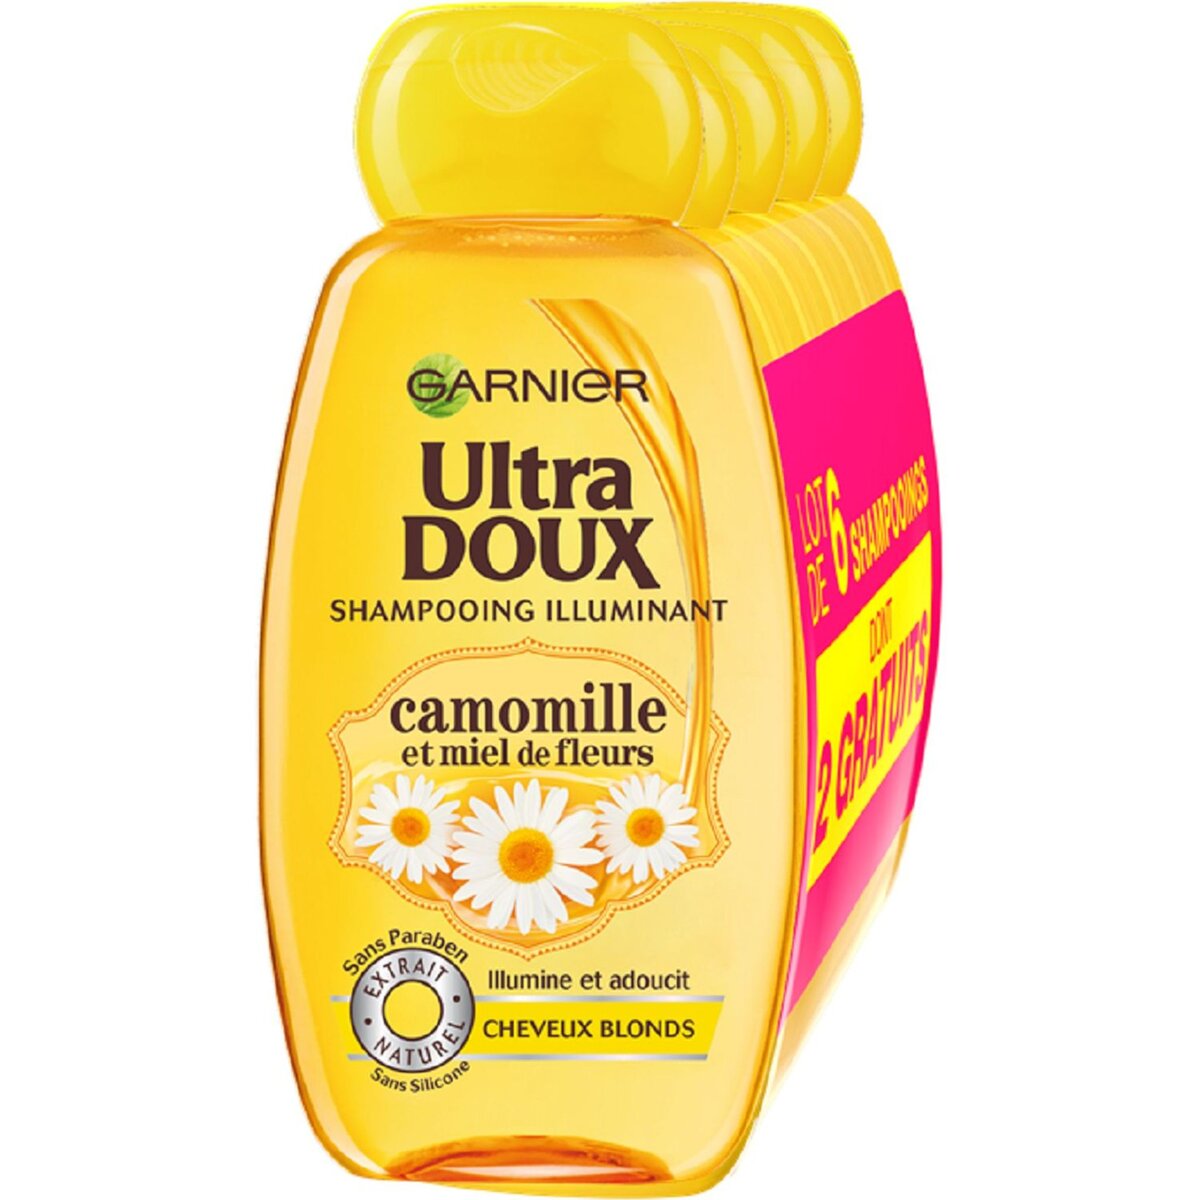 GARNIER ULTRA DOUX Ultra Doux shampooing camomille 6x250ml 1,5l